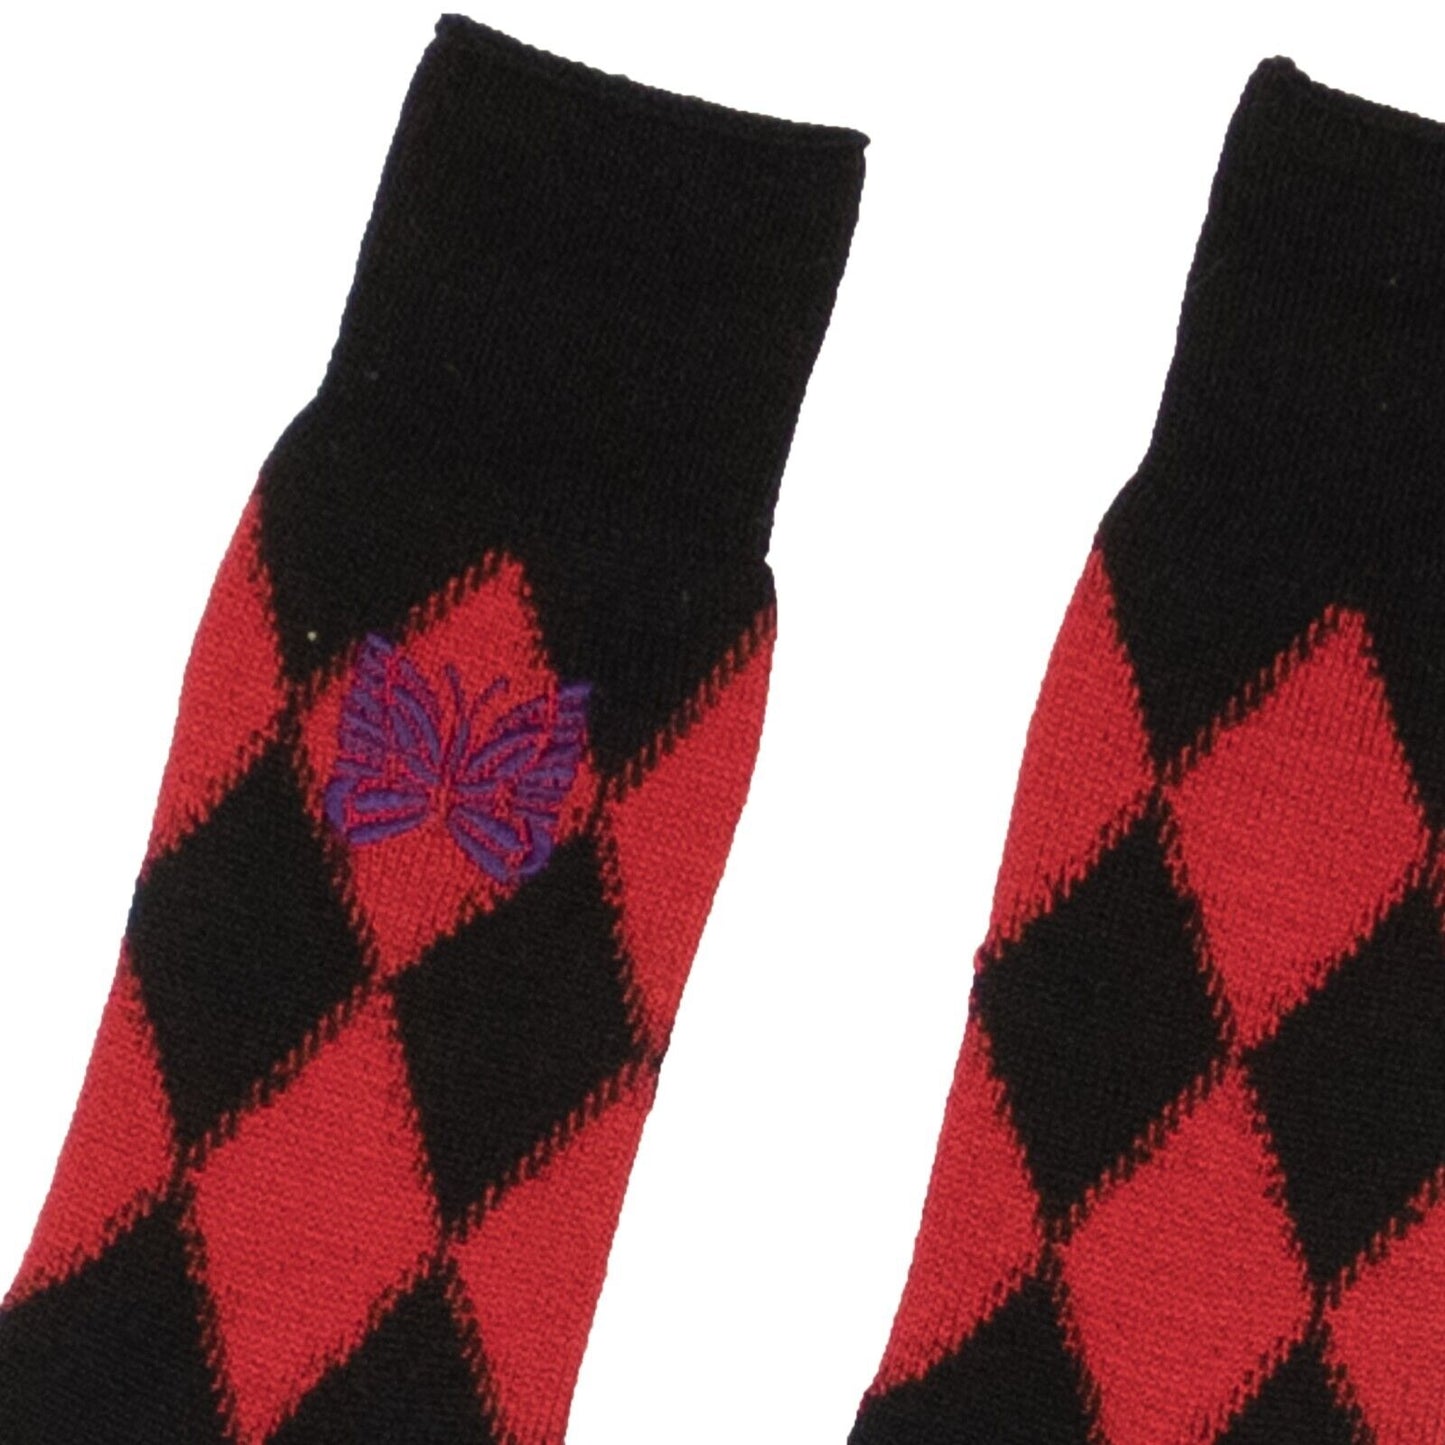 Needles Argyle Socks - Black/Red